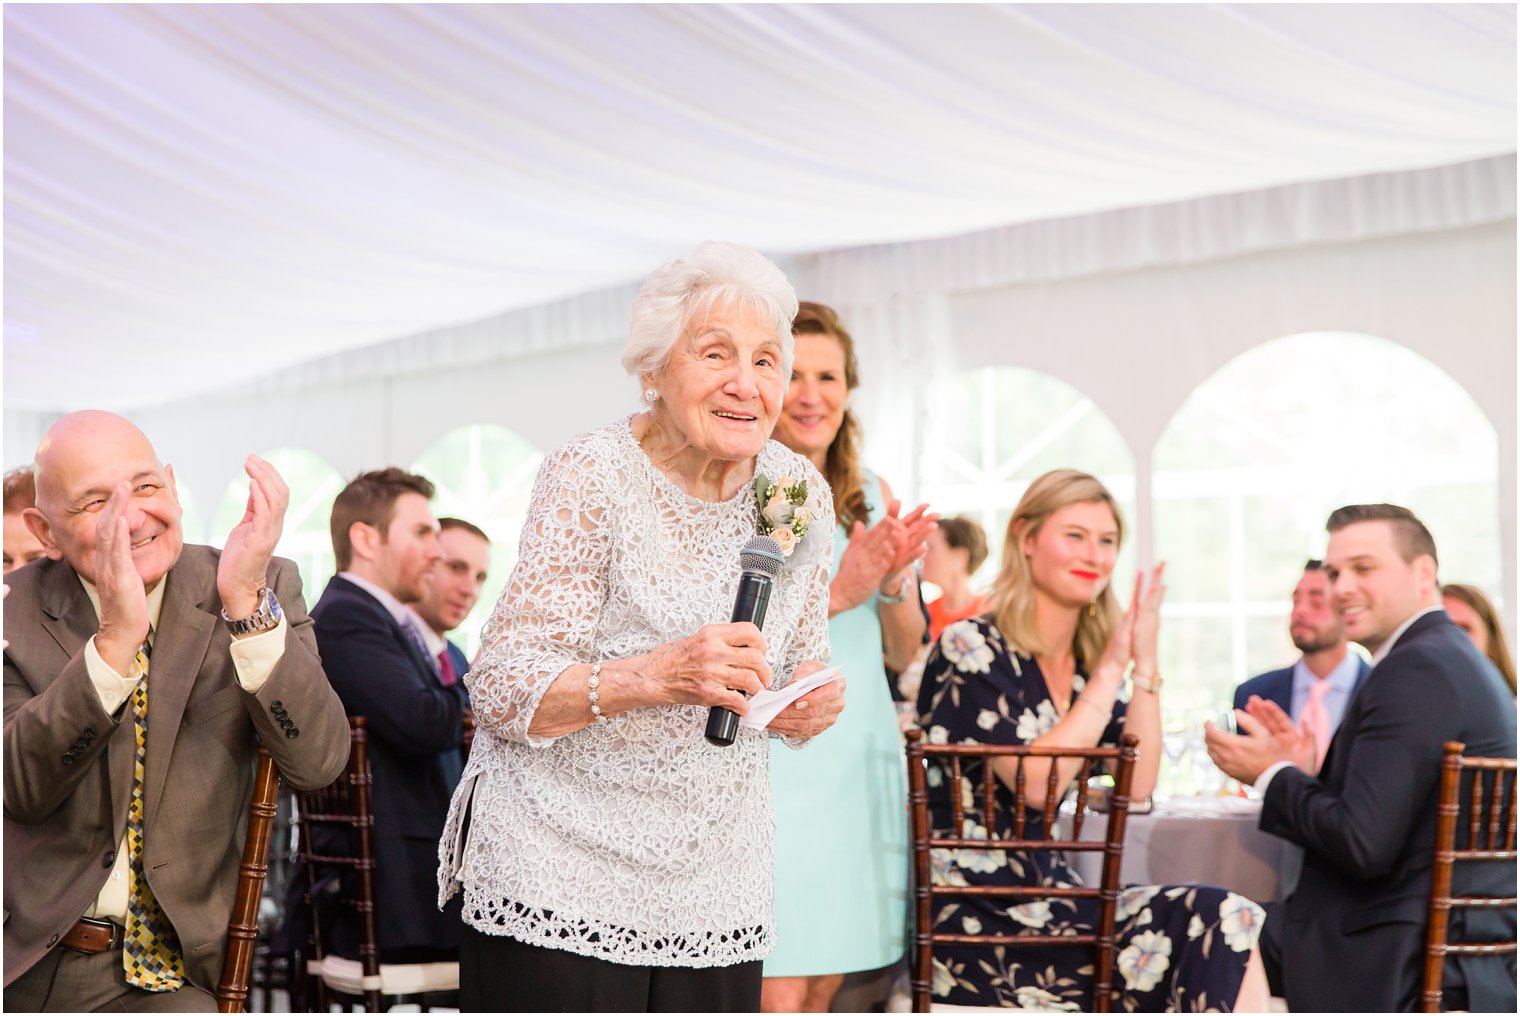 Grandmother toasting to newlyweds | Photo by Idalia Photography